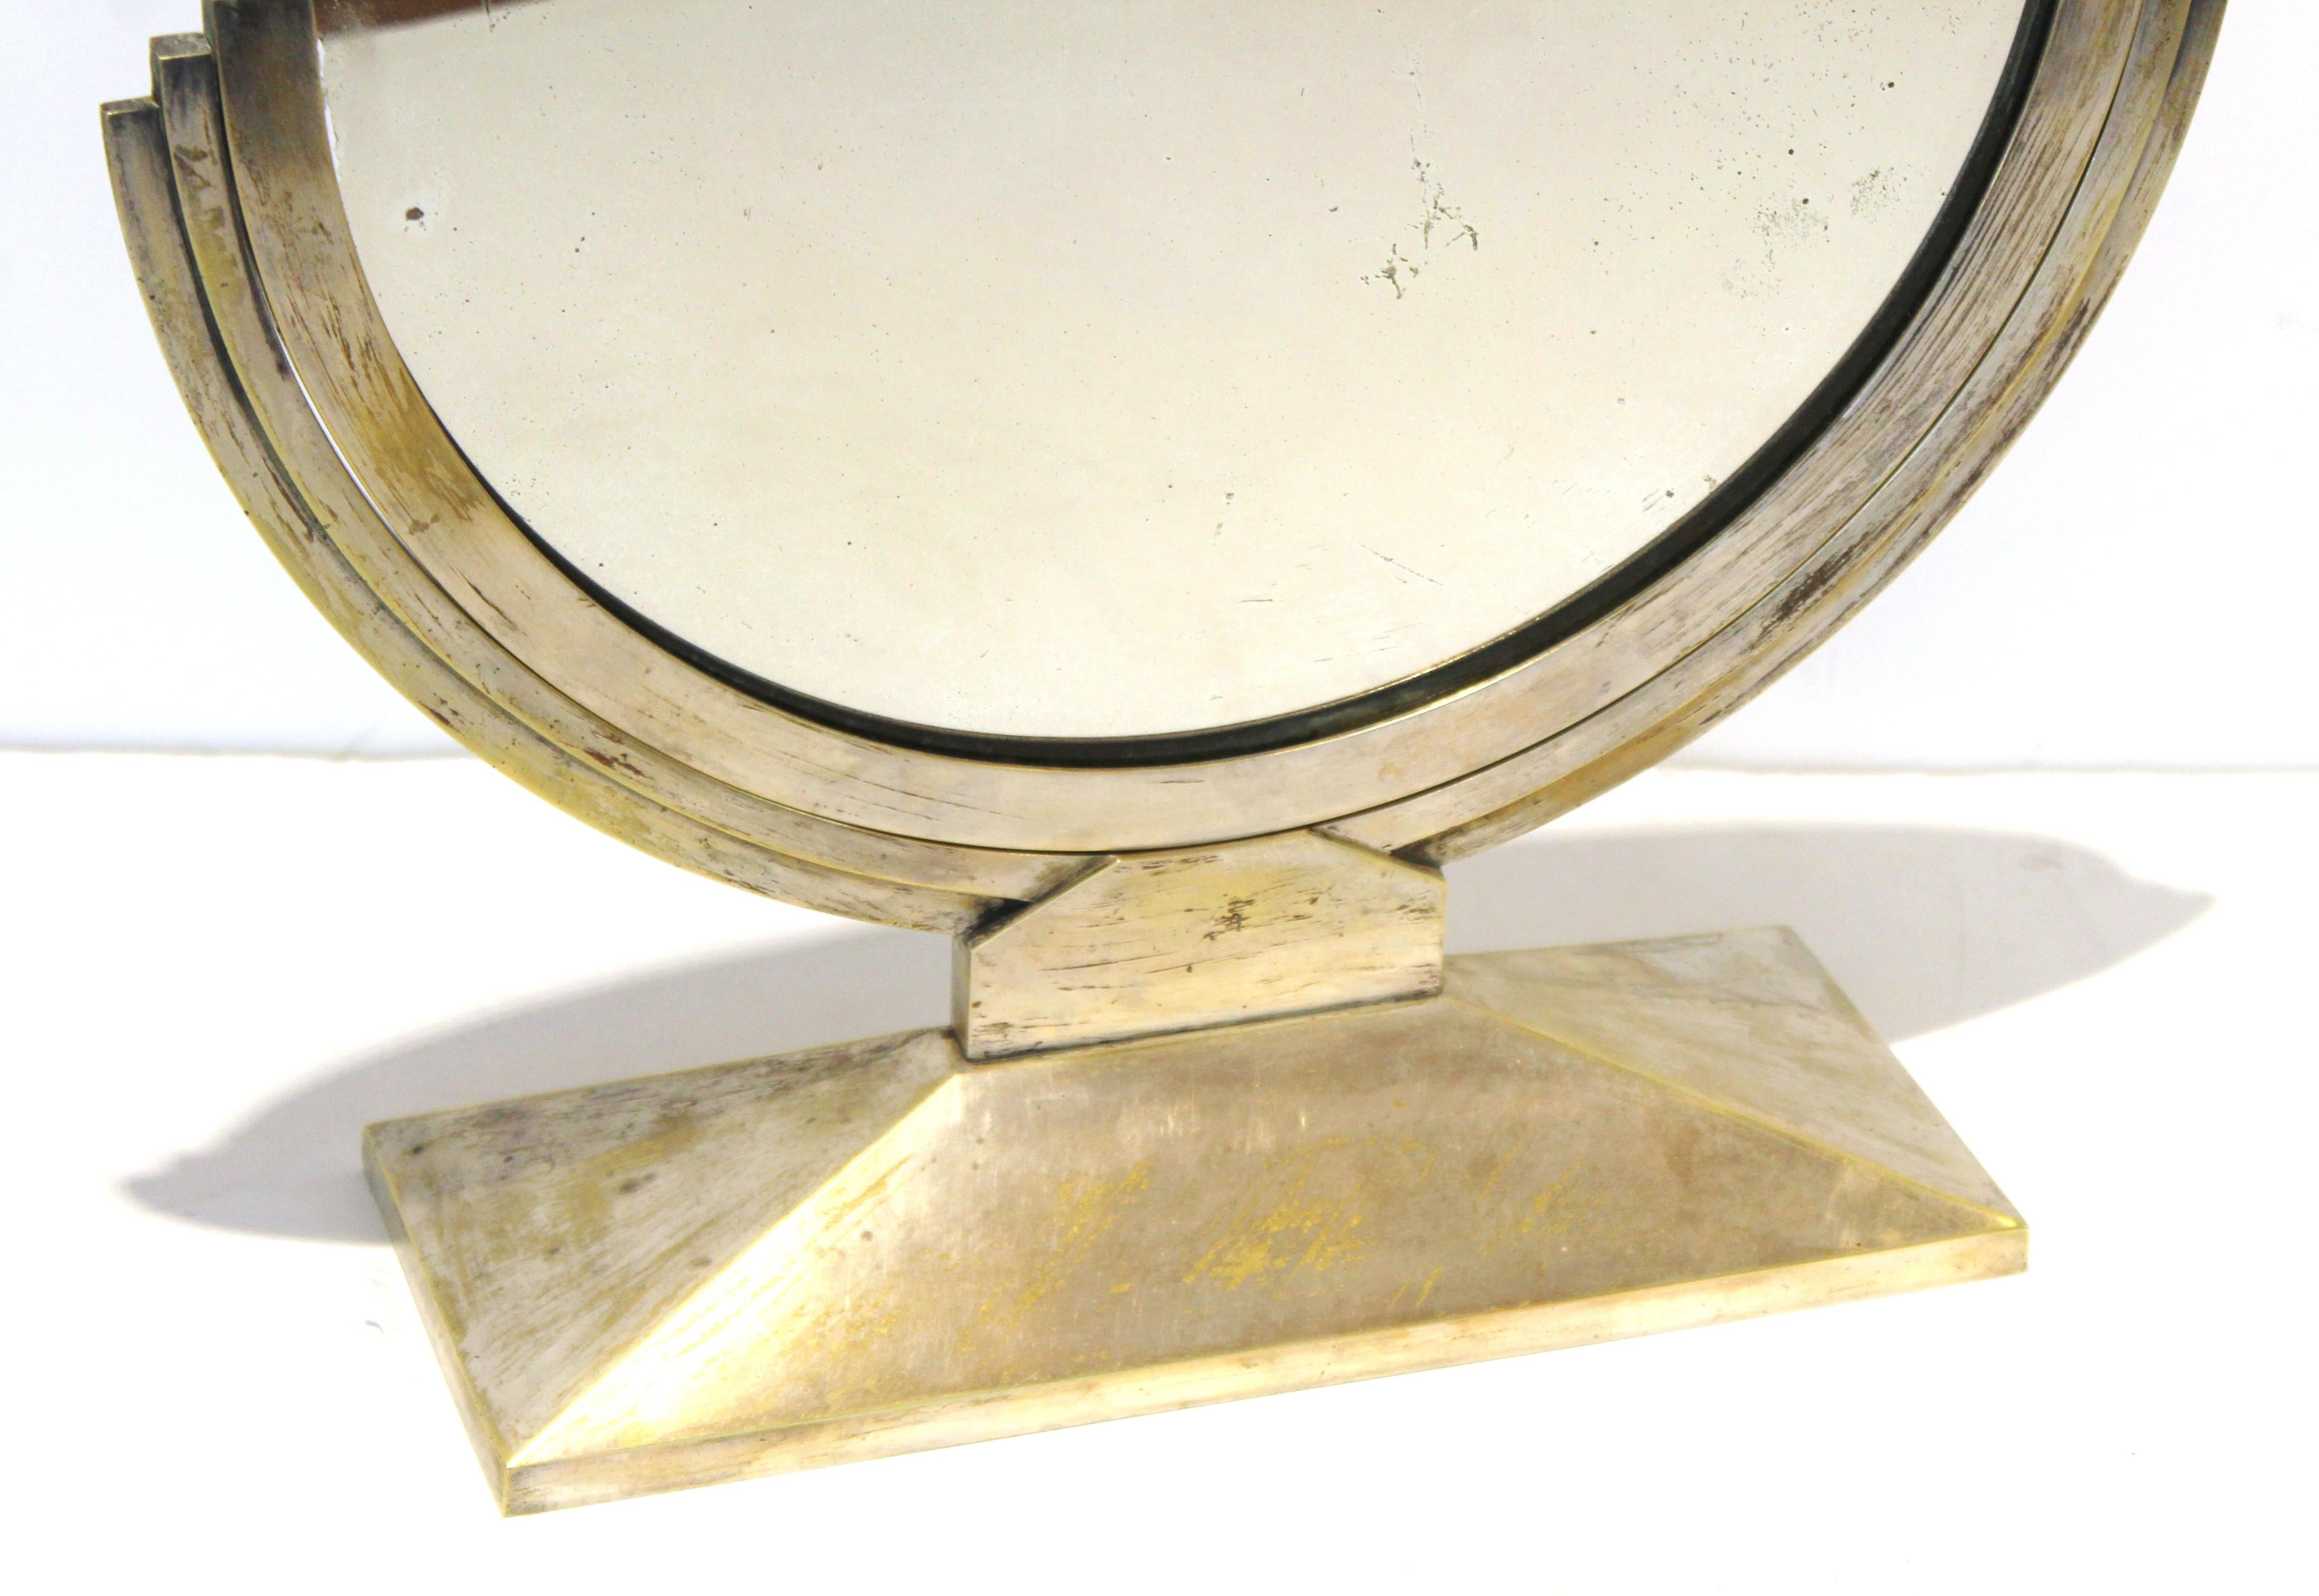 Runder französischer Art-Déco-Tischspiegel oder Schminkspiegel von Maison Desny. Das Stück besteht aus versilbertem Nickel über einer Bronzestruktur und Drehgelenken. Das modernistische Design verleiht ihm eine schlichte, minimale Ausstrahlung. Das